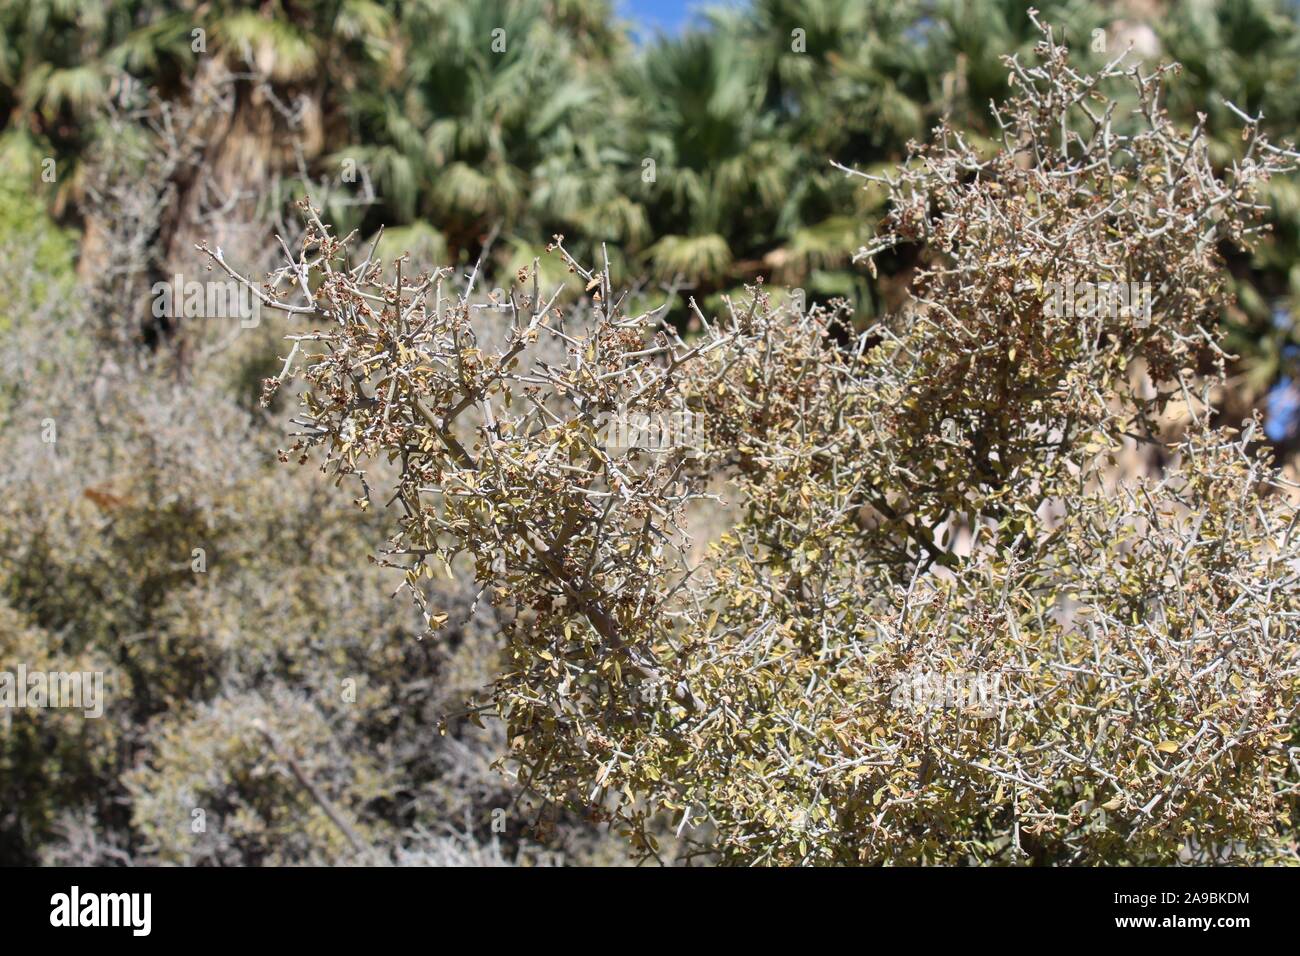 Dans le désert près de Colorado Spring Cottonwood de Joshua Tree National Park, sur le plan taxonomique des plantes indigènes, Ziziphus Obtusifolia comme Graythorn avec désinvolture. Banque D'Images